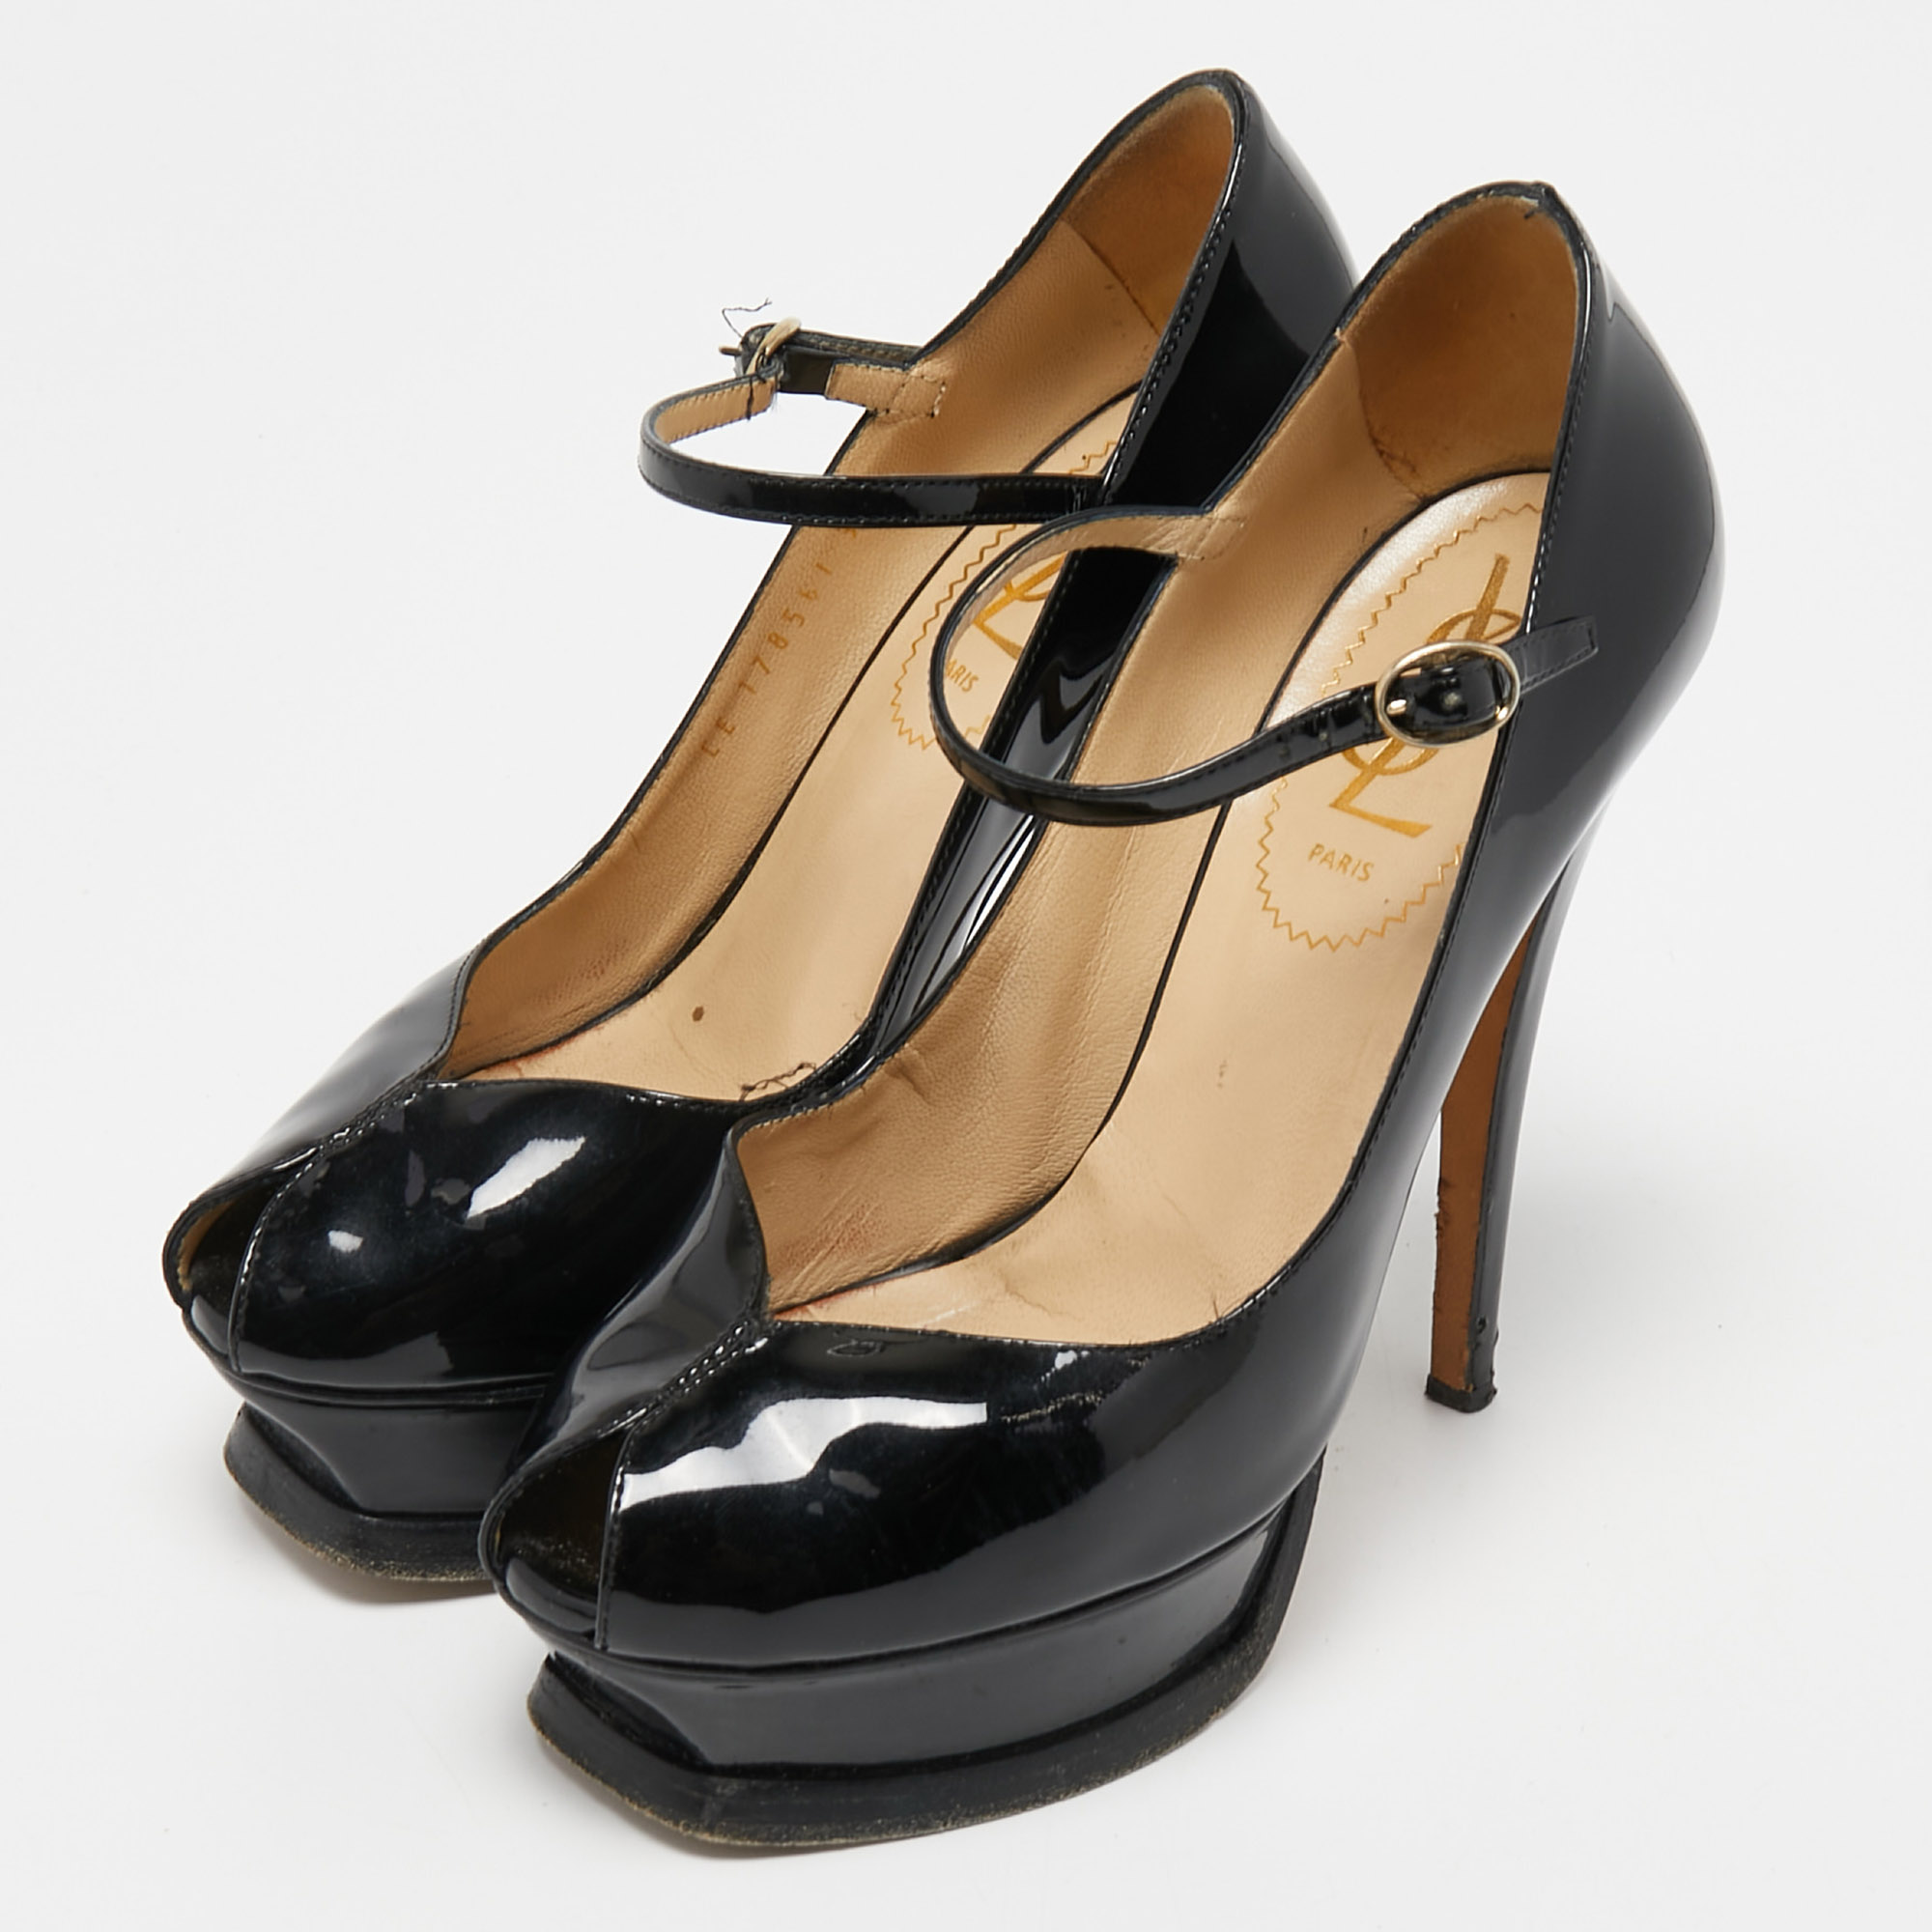 

Yves Saint Laurent Black Patent Leather Peep Toe Pumps Size 35